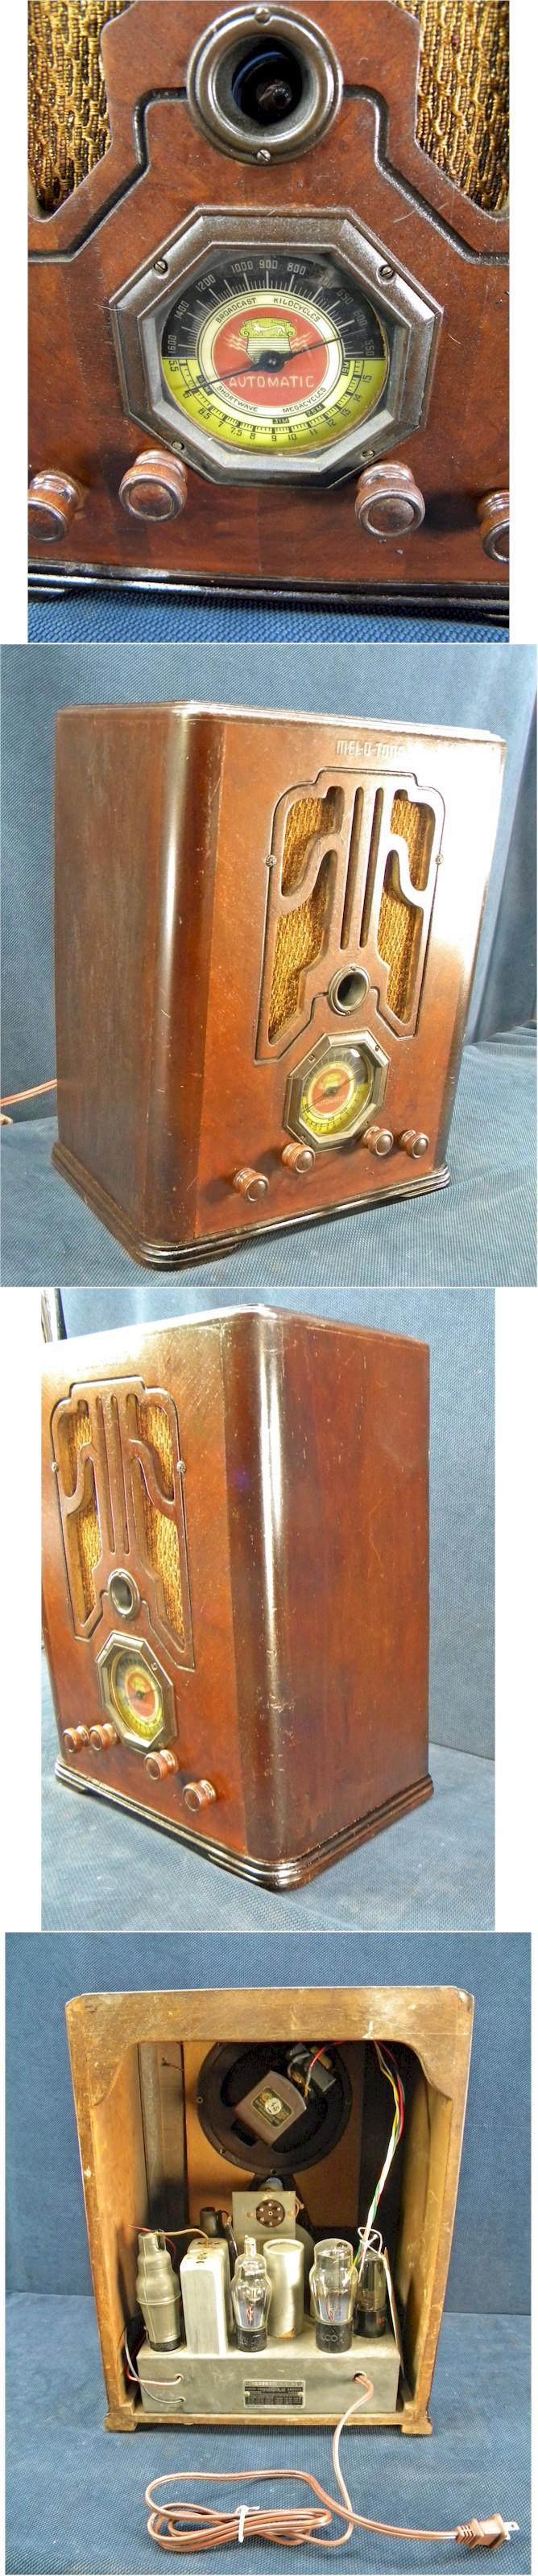 Automatic Radio C-15 Tombstone (1938)